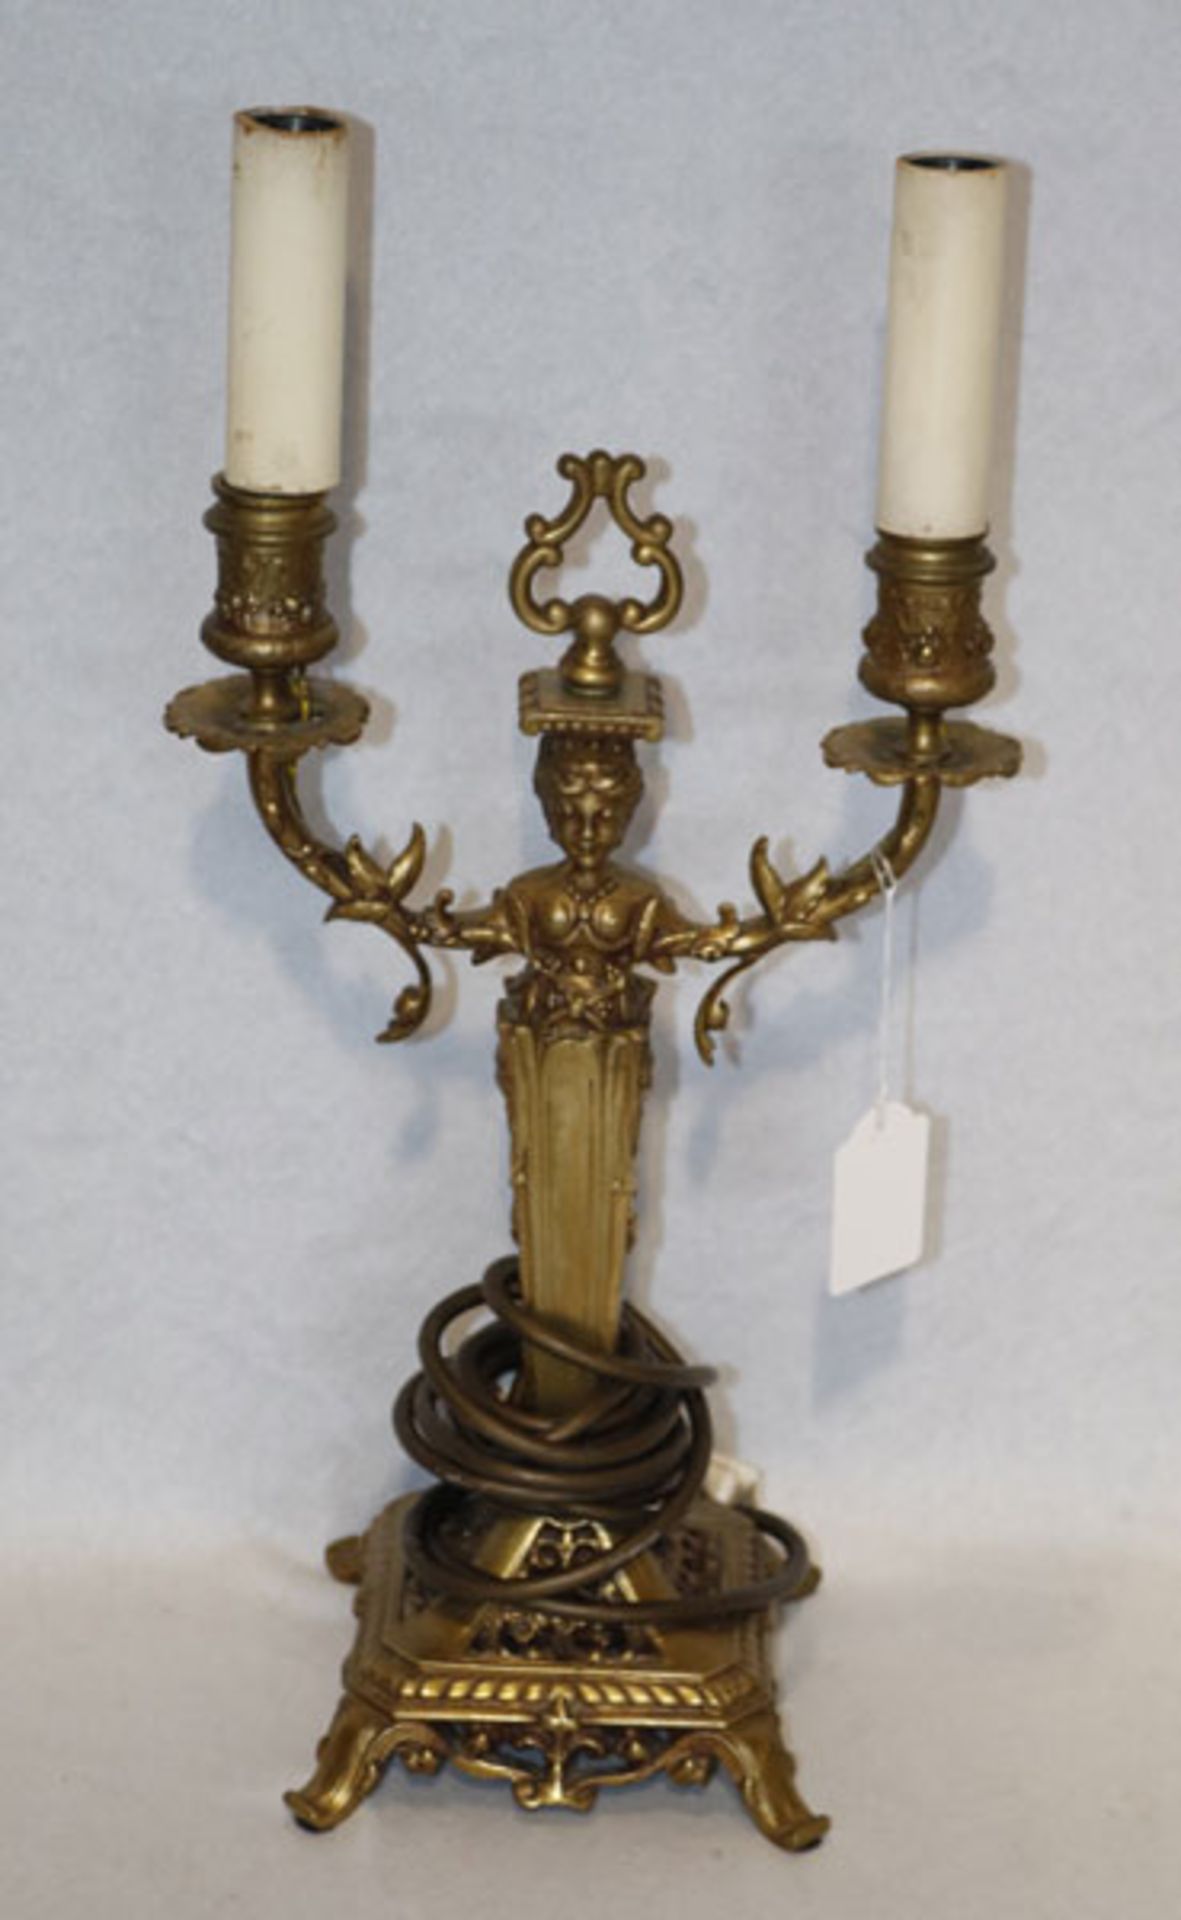 Messing Tischlampe in figürlicher Form mit 2 Leuchtern, H 42 cm, B 21 cm, T 14 cm, Funktion nicht